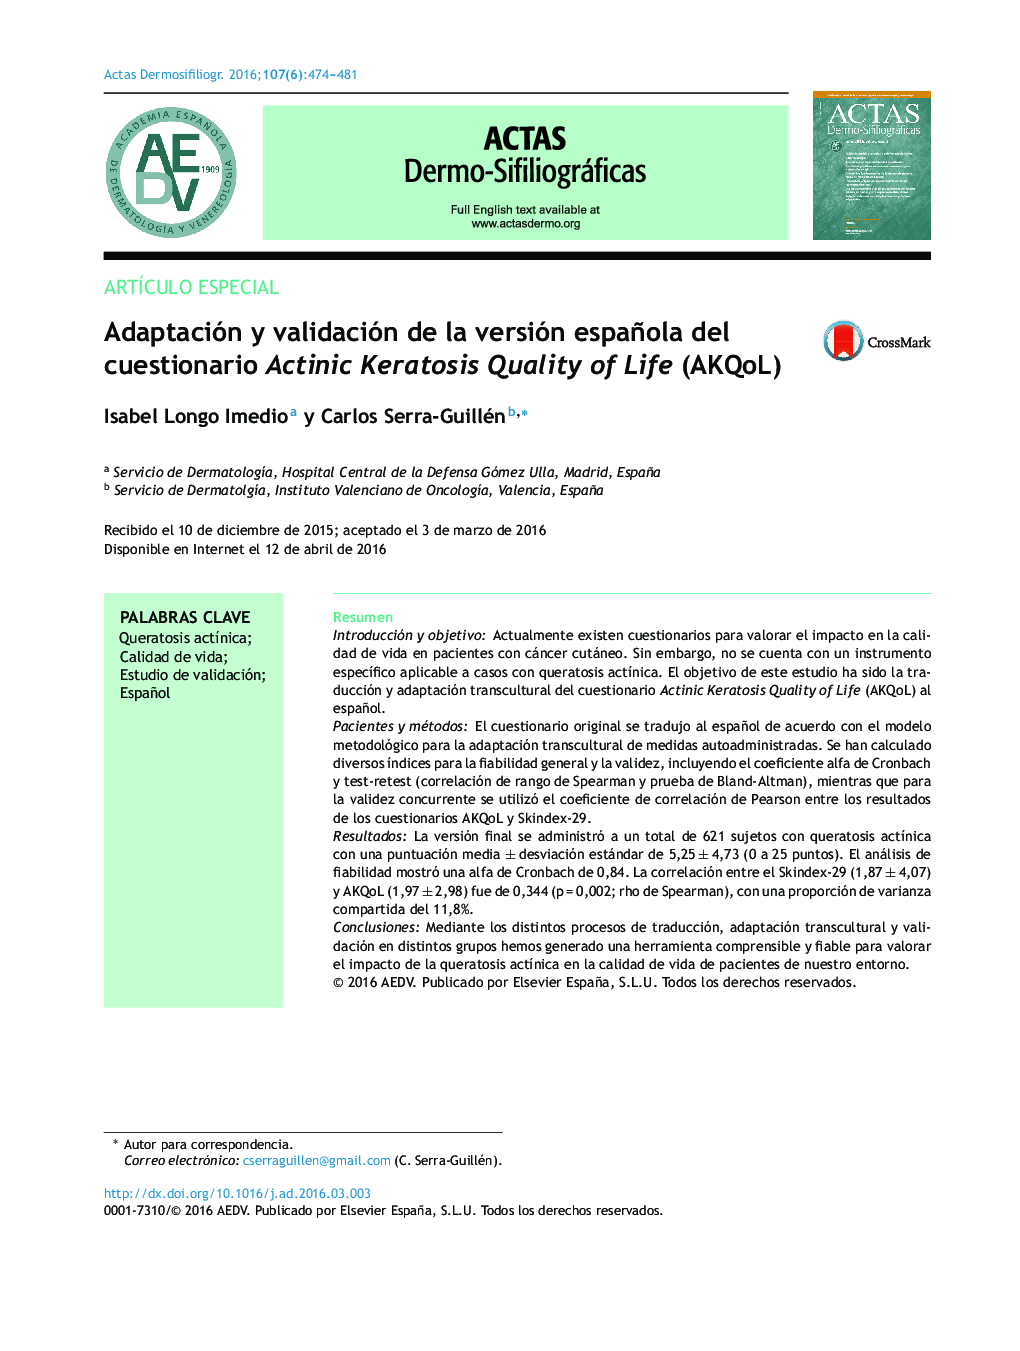 Adaptación y validación de la versión española del cuestionario Actinic Keratosis Quality of Life (AKQoL)